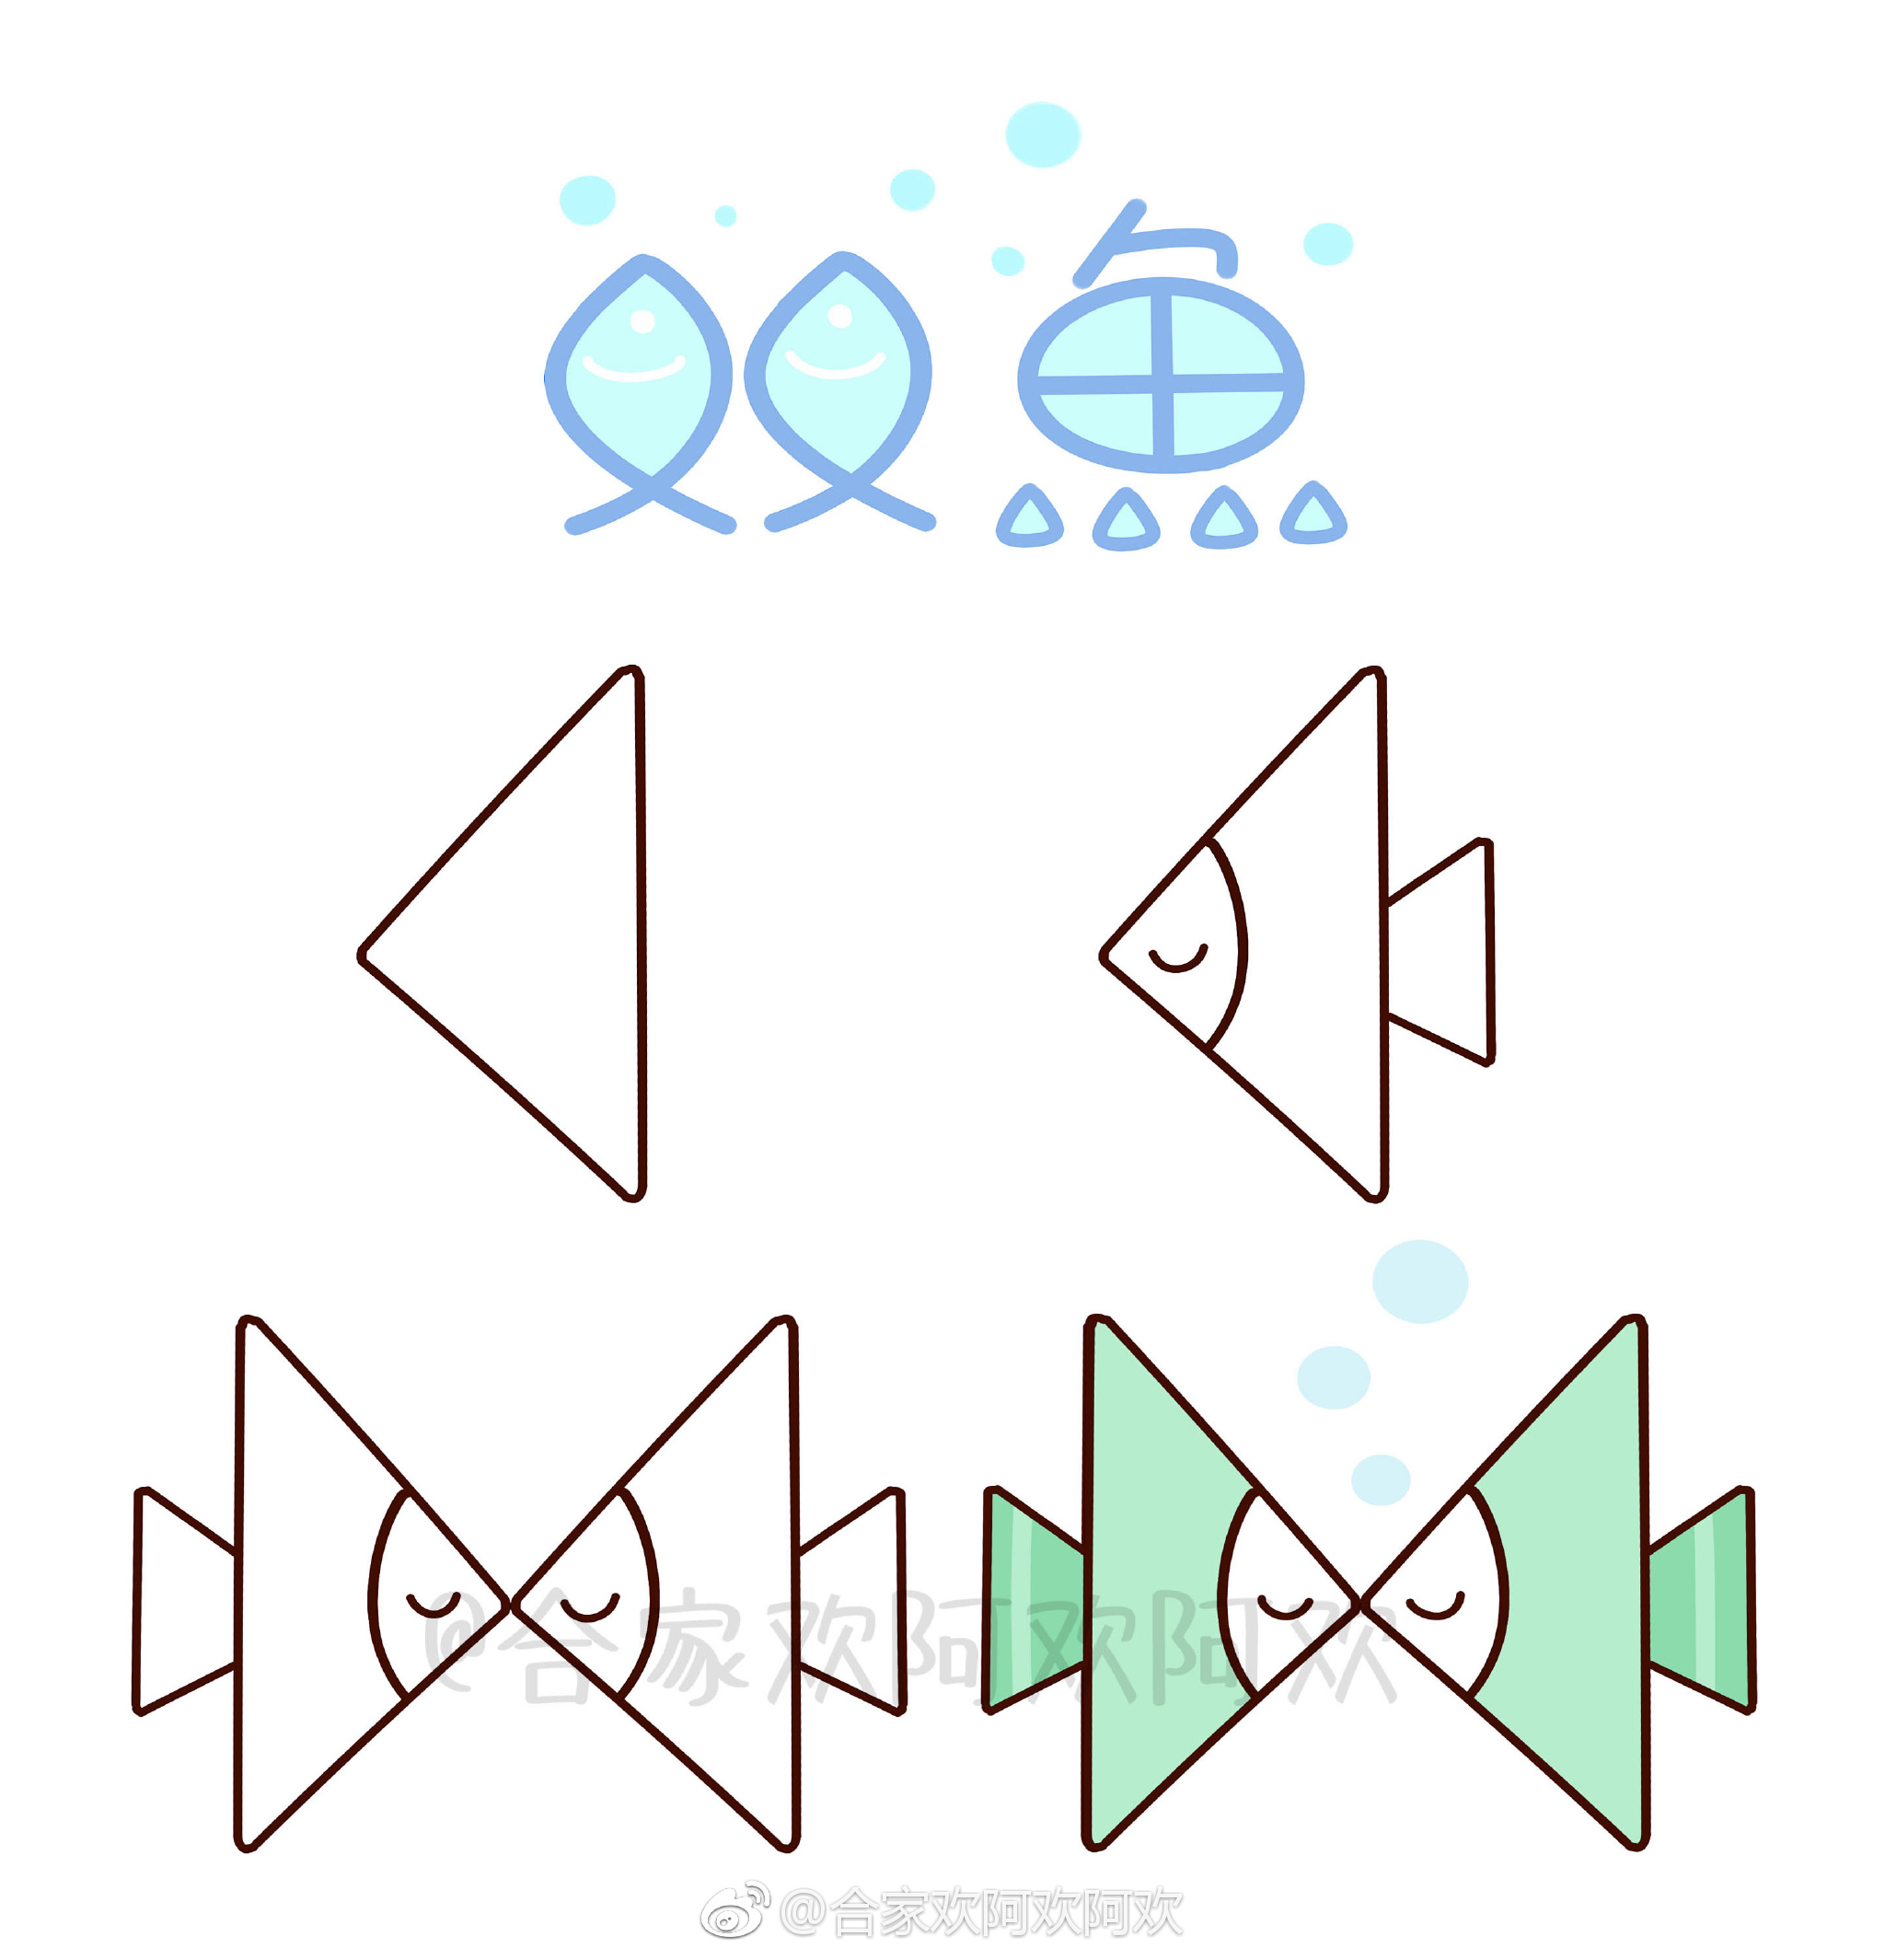 用三角形画出的12星座~(ω )